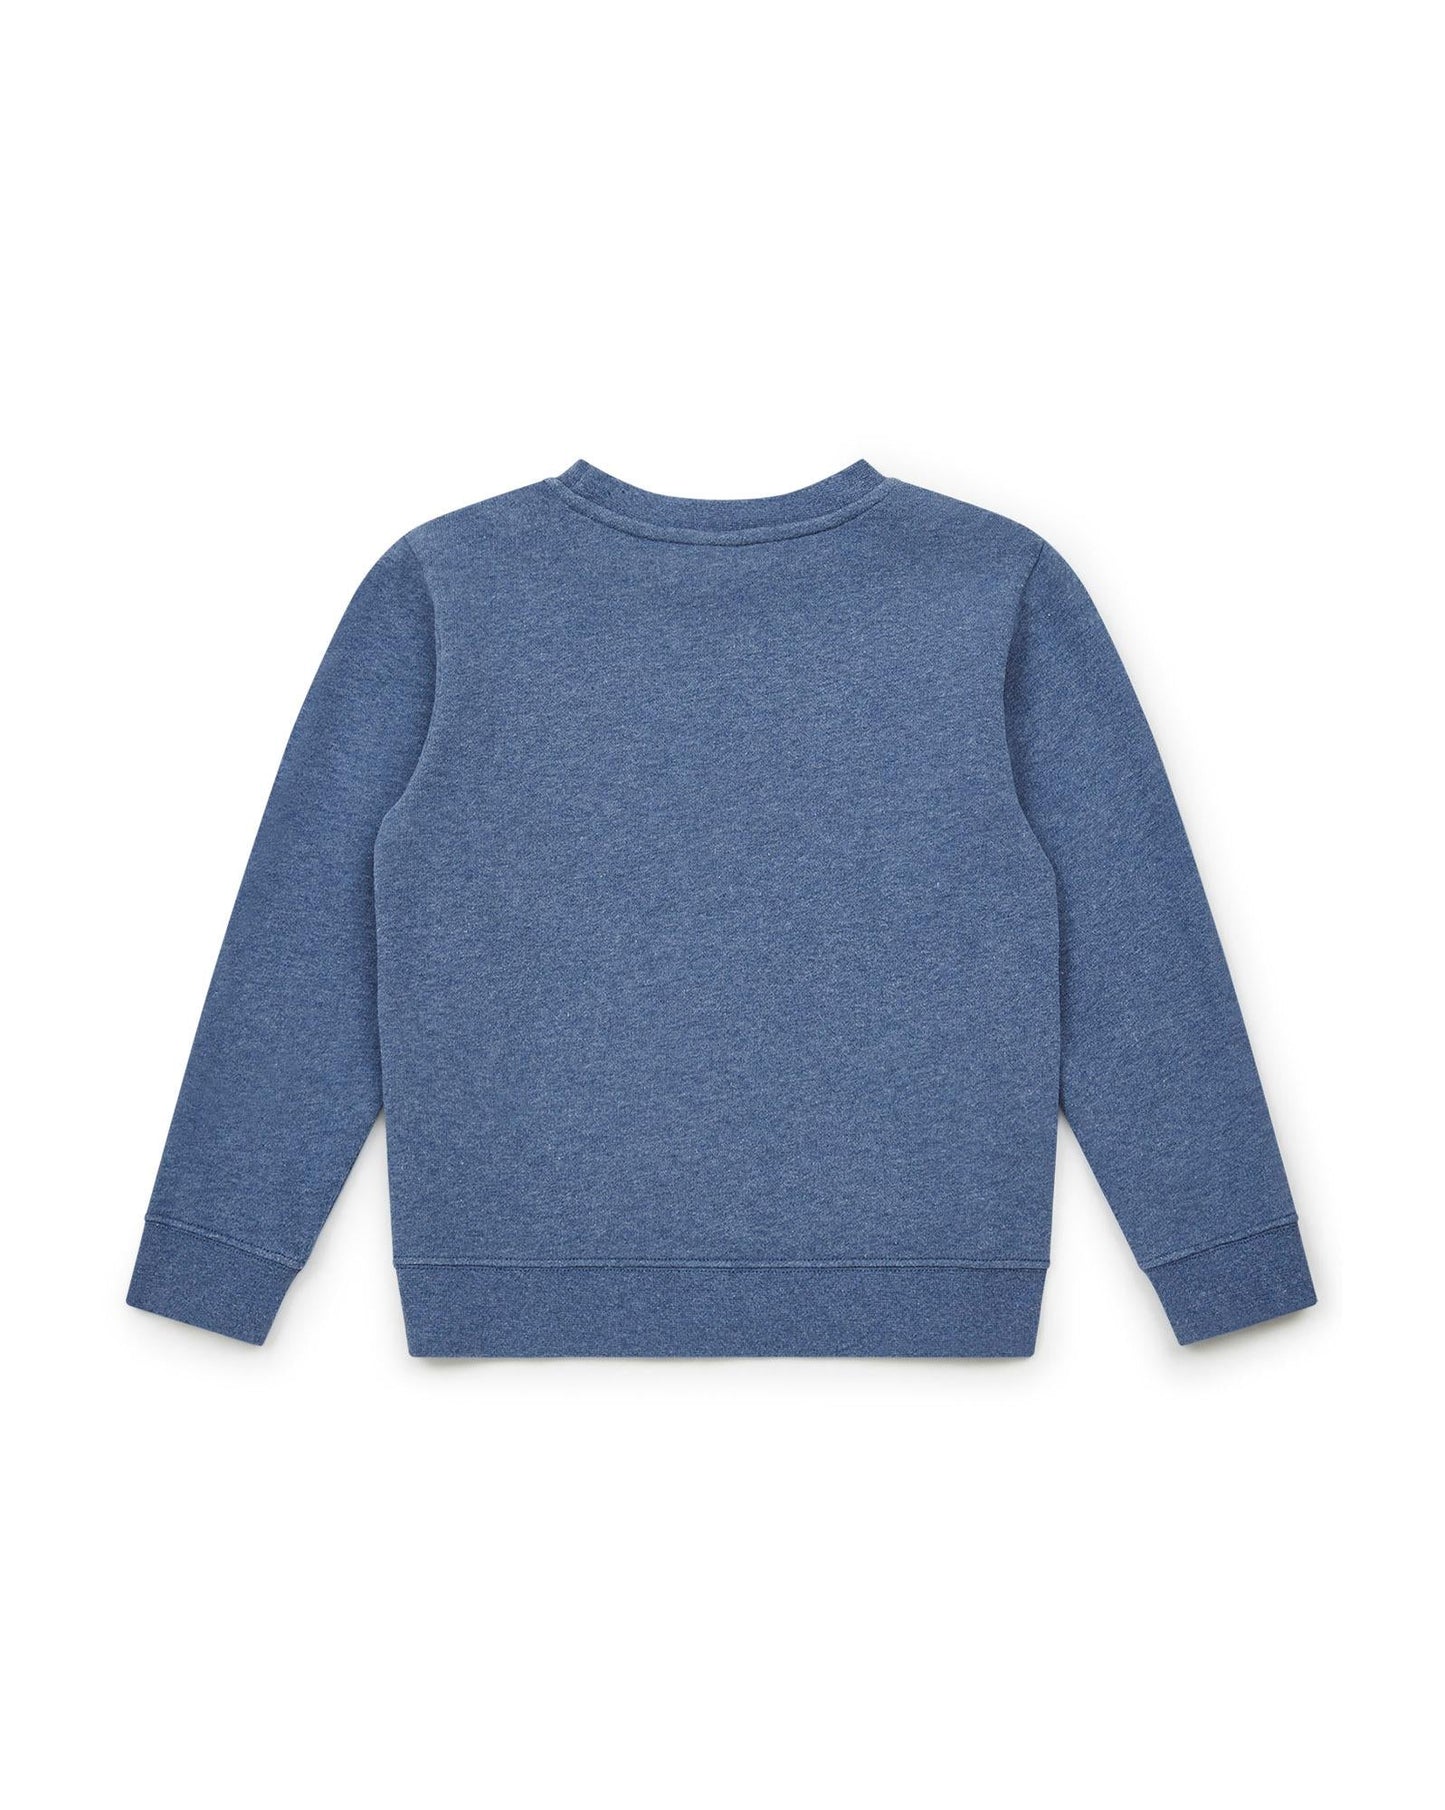 Sweatshirt - Breakfast Blue in organic cotton